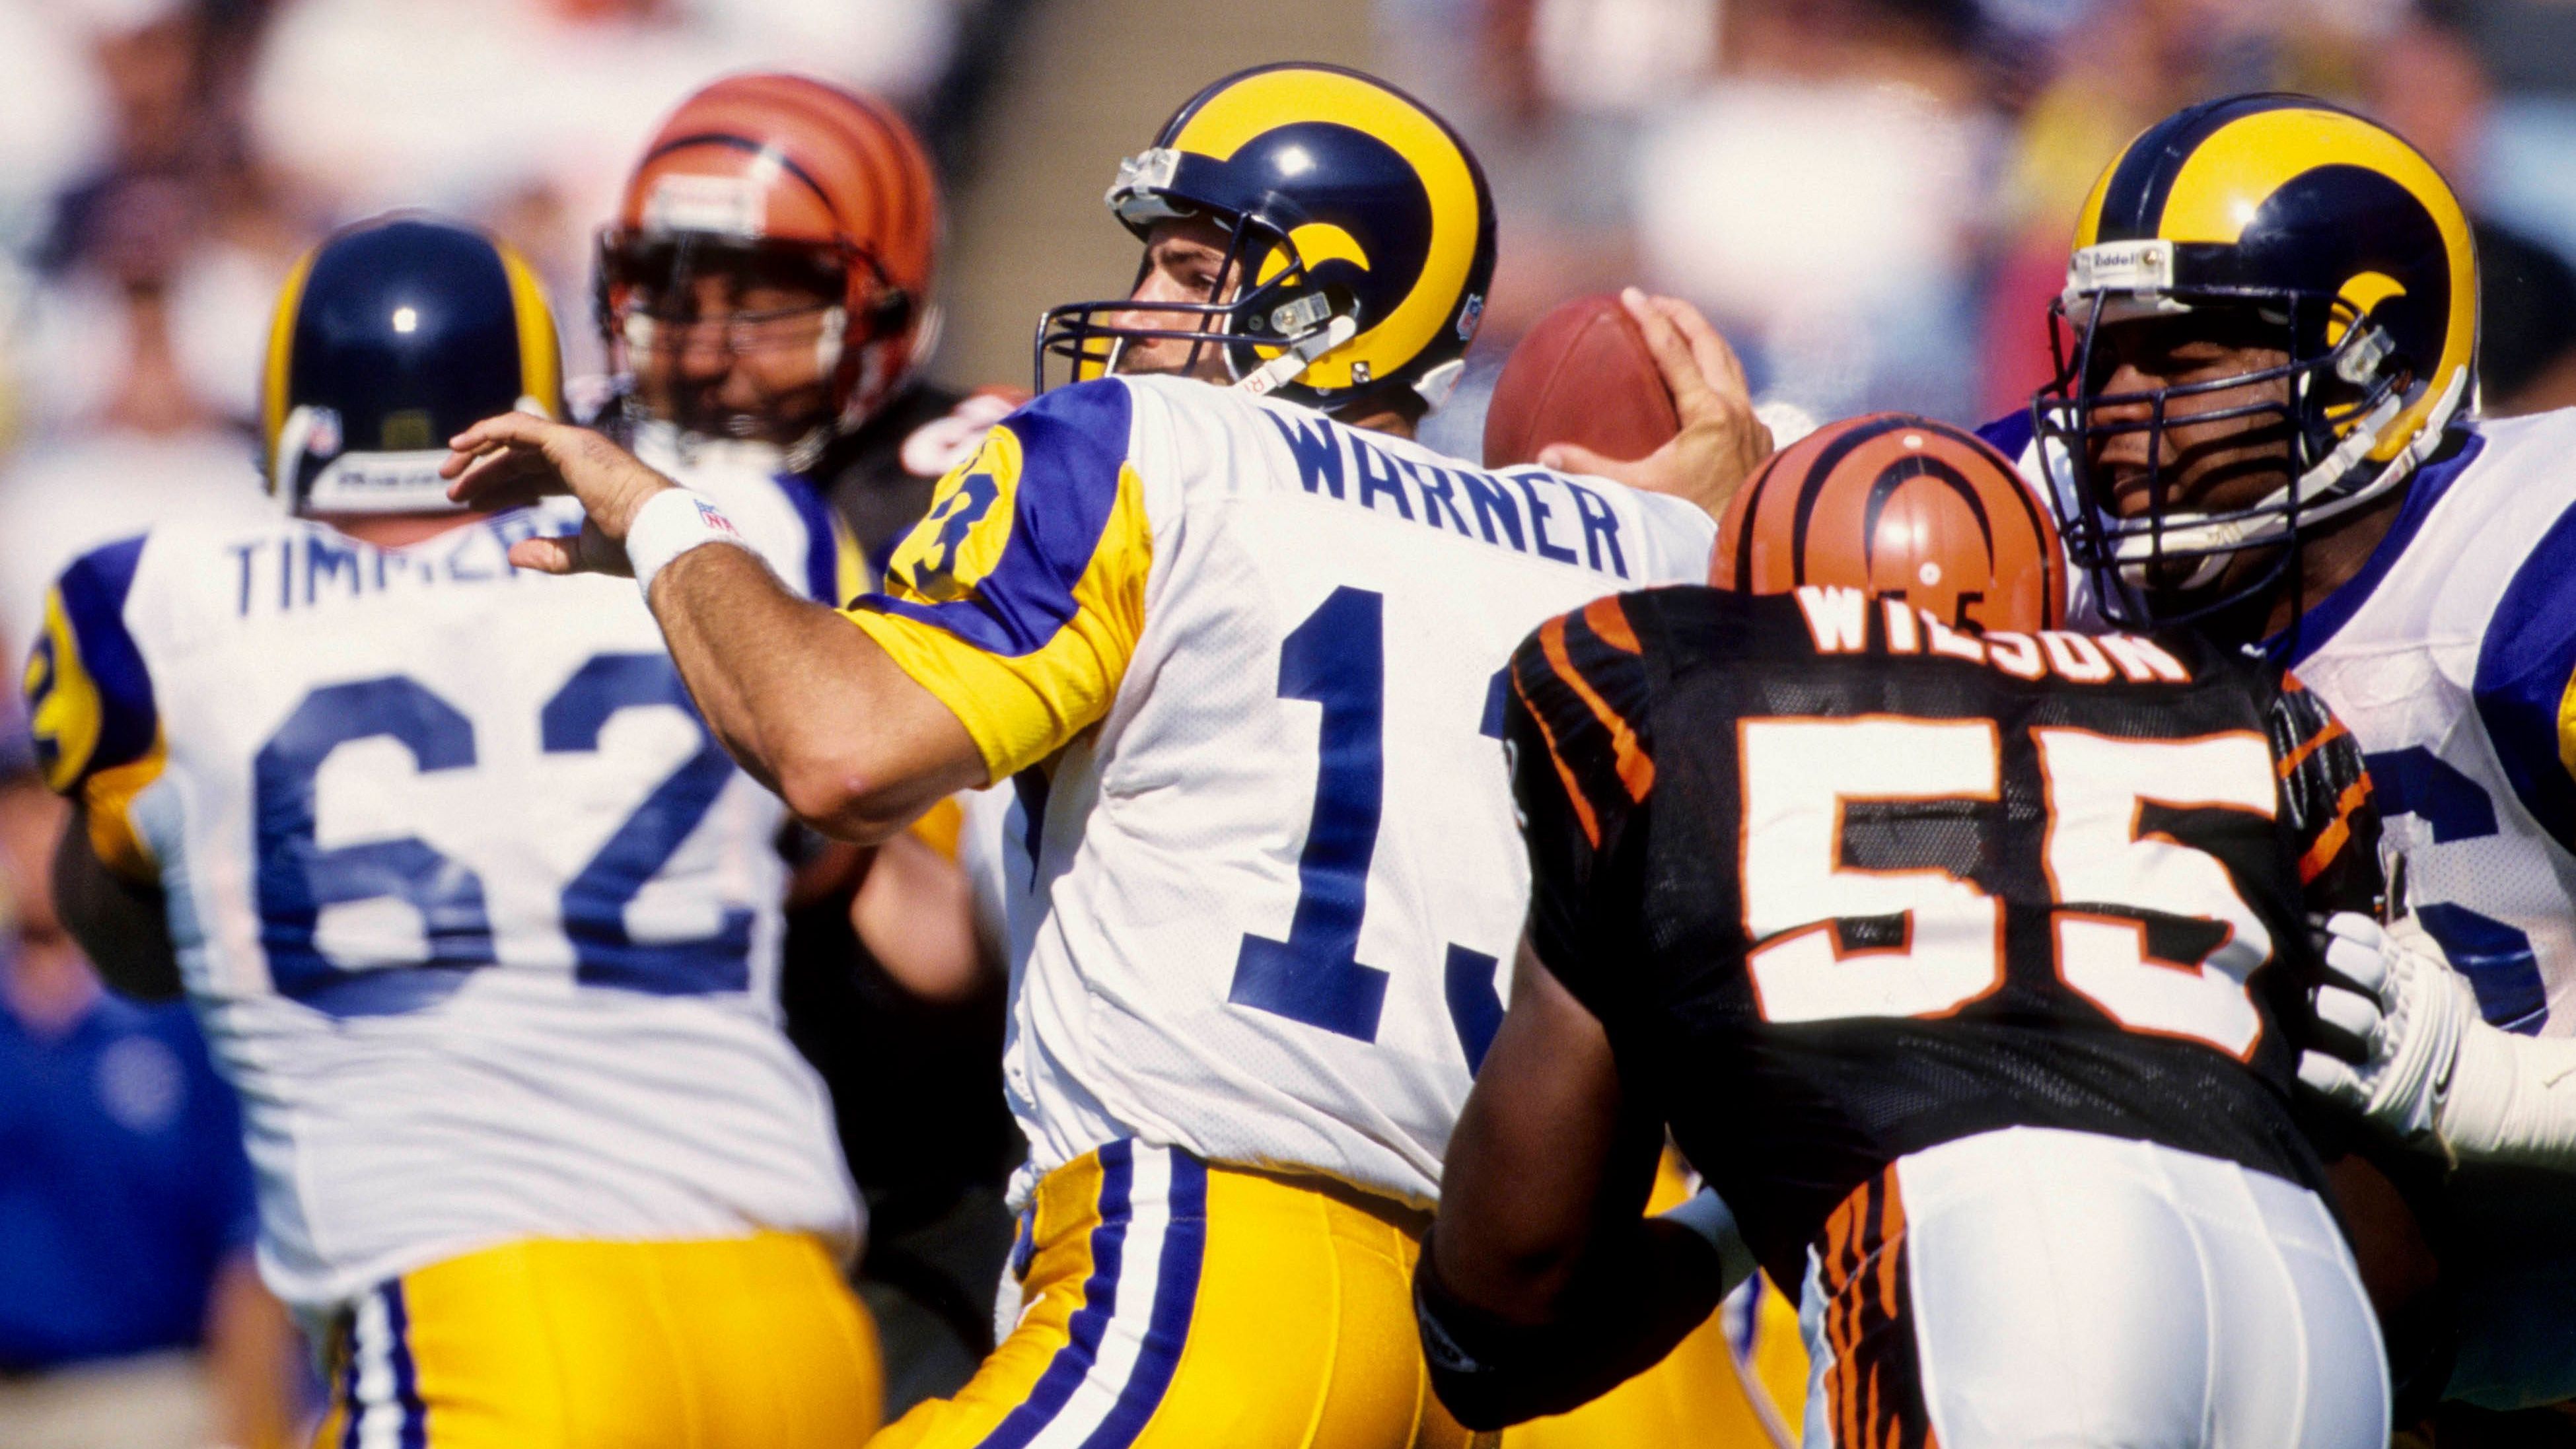 <strong>Platz 3: Kurt Warner zu den St. Louis Rams (1998)</strong><br>Warners Ankunft beflügelte die leistungsstarke Offensive der Rams, führte sie zum Super-Bowl-Sieg 1999 und brachte ihm zwei NFL-MVP-Auszeichnungen ein. Warner kam von den Amsterdam Admirals aus der NFL Europe.